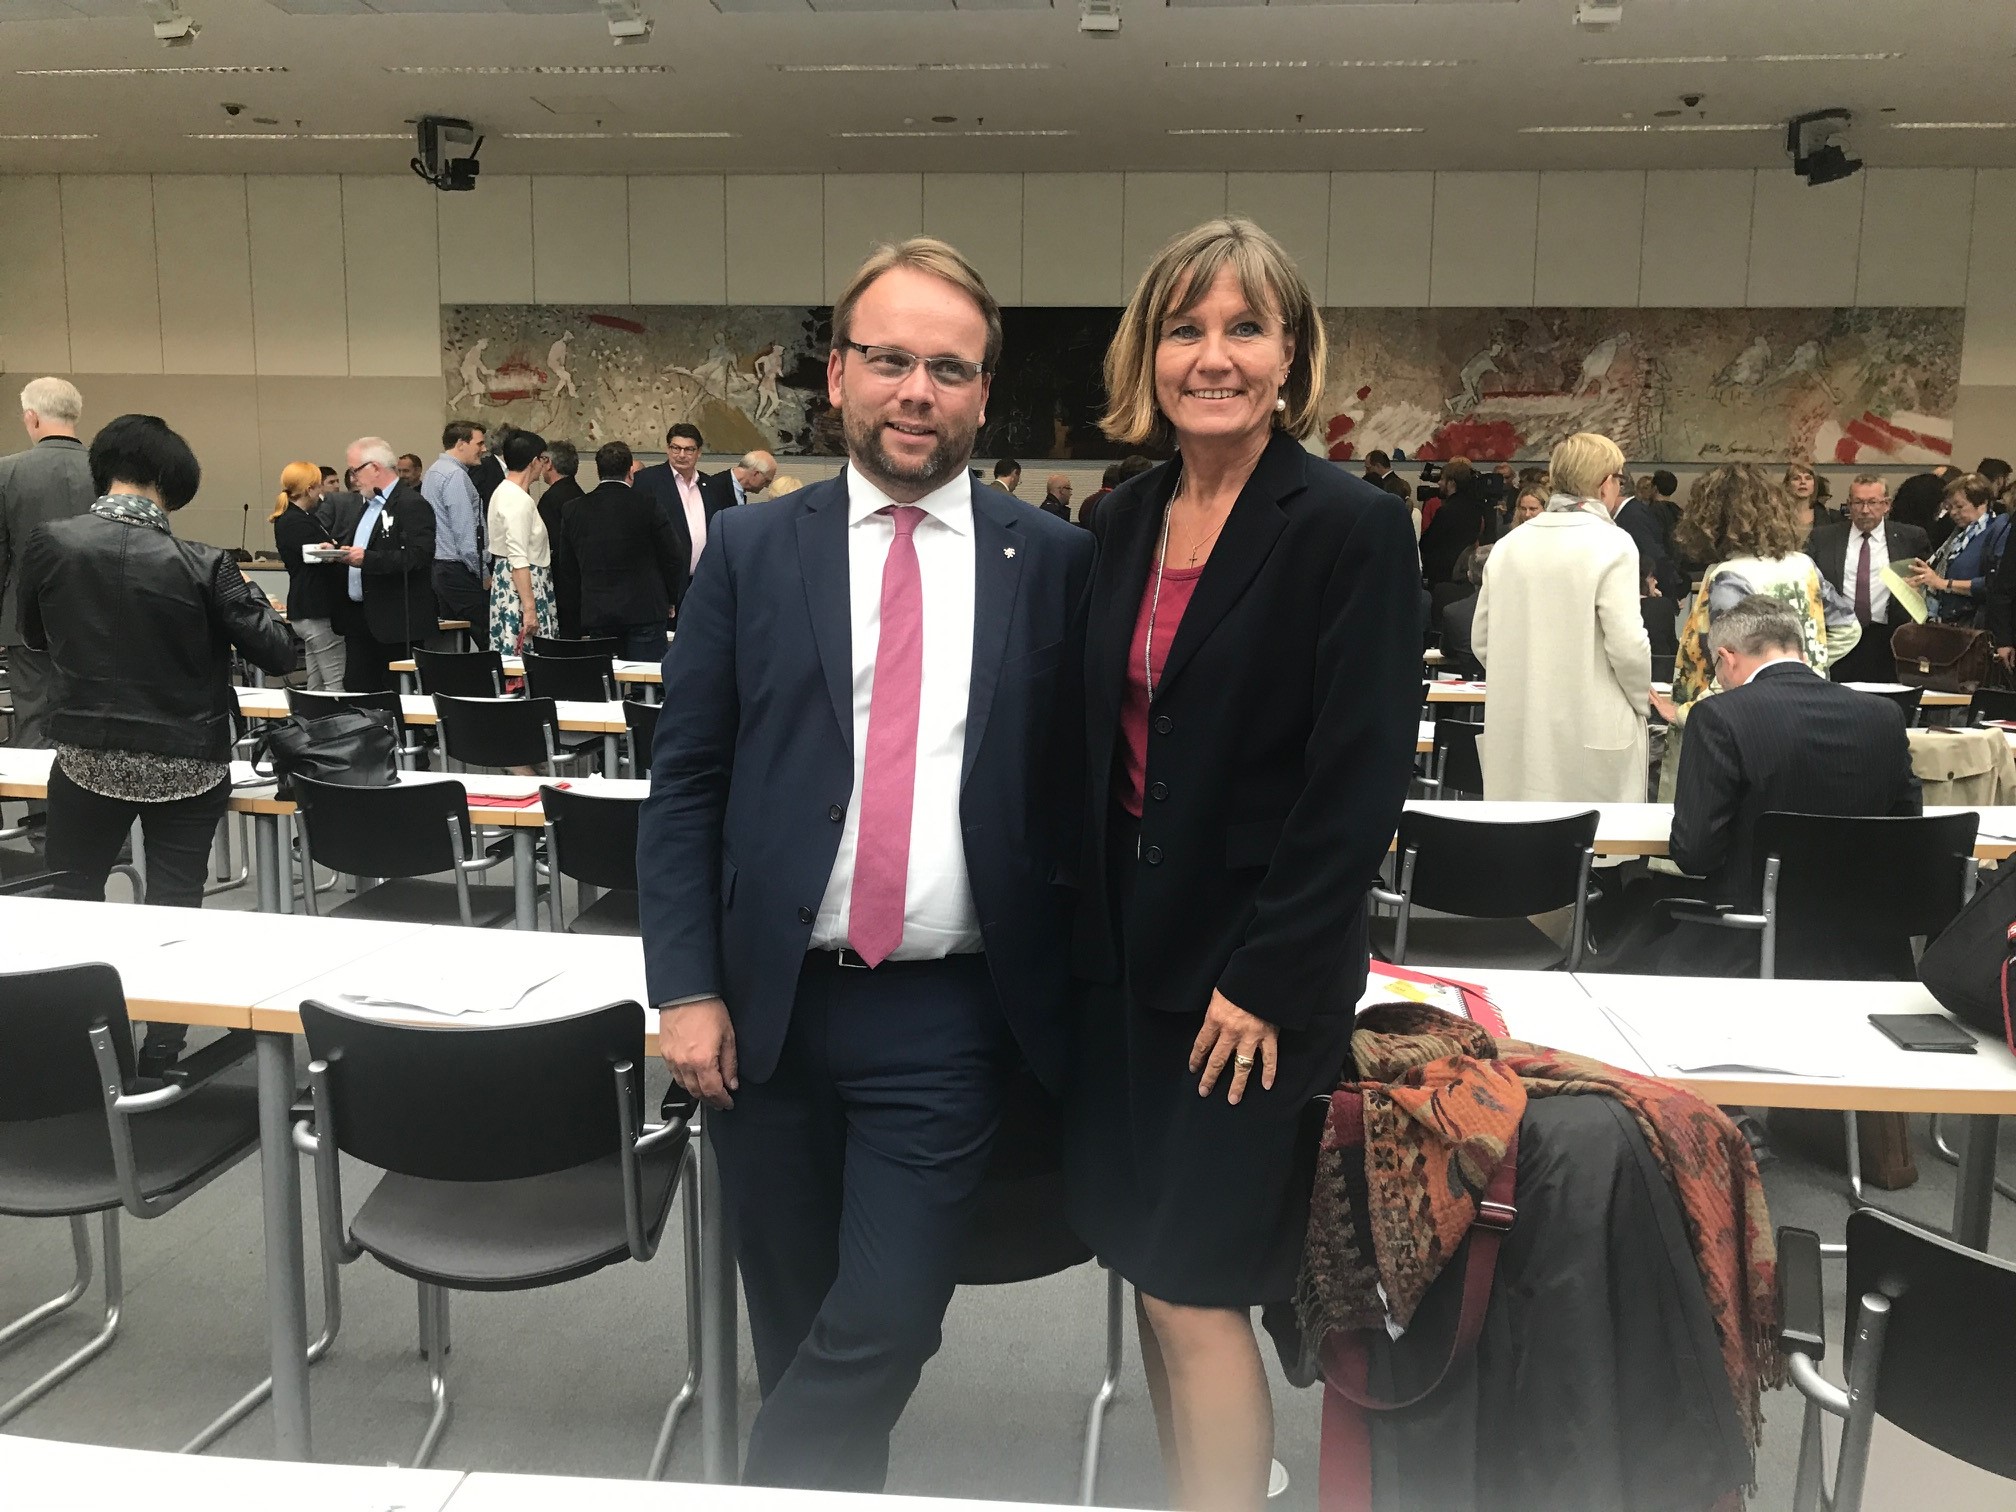 Timon Gremmels und Esther Dilcher bei der konstituierende Sitzung der SPD-Bundestagsfraktion fÃ¼r den 19. Deutschen Bundestag in Berlin